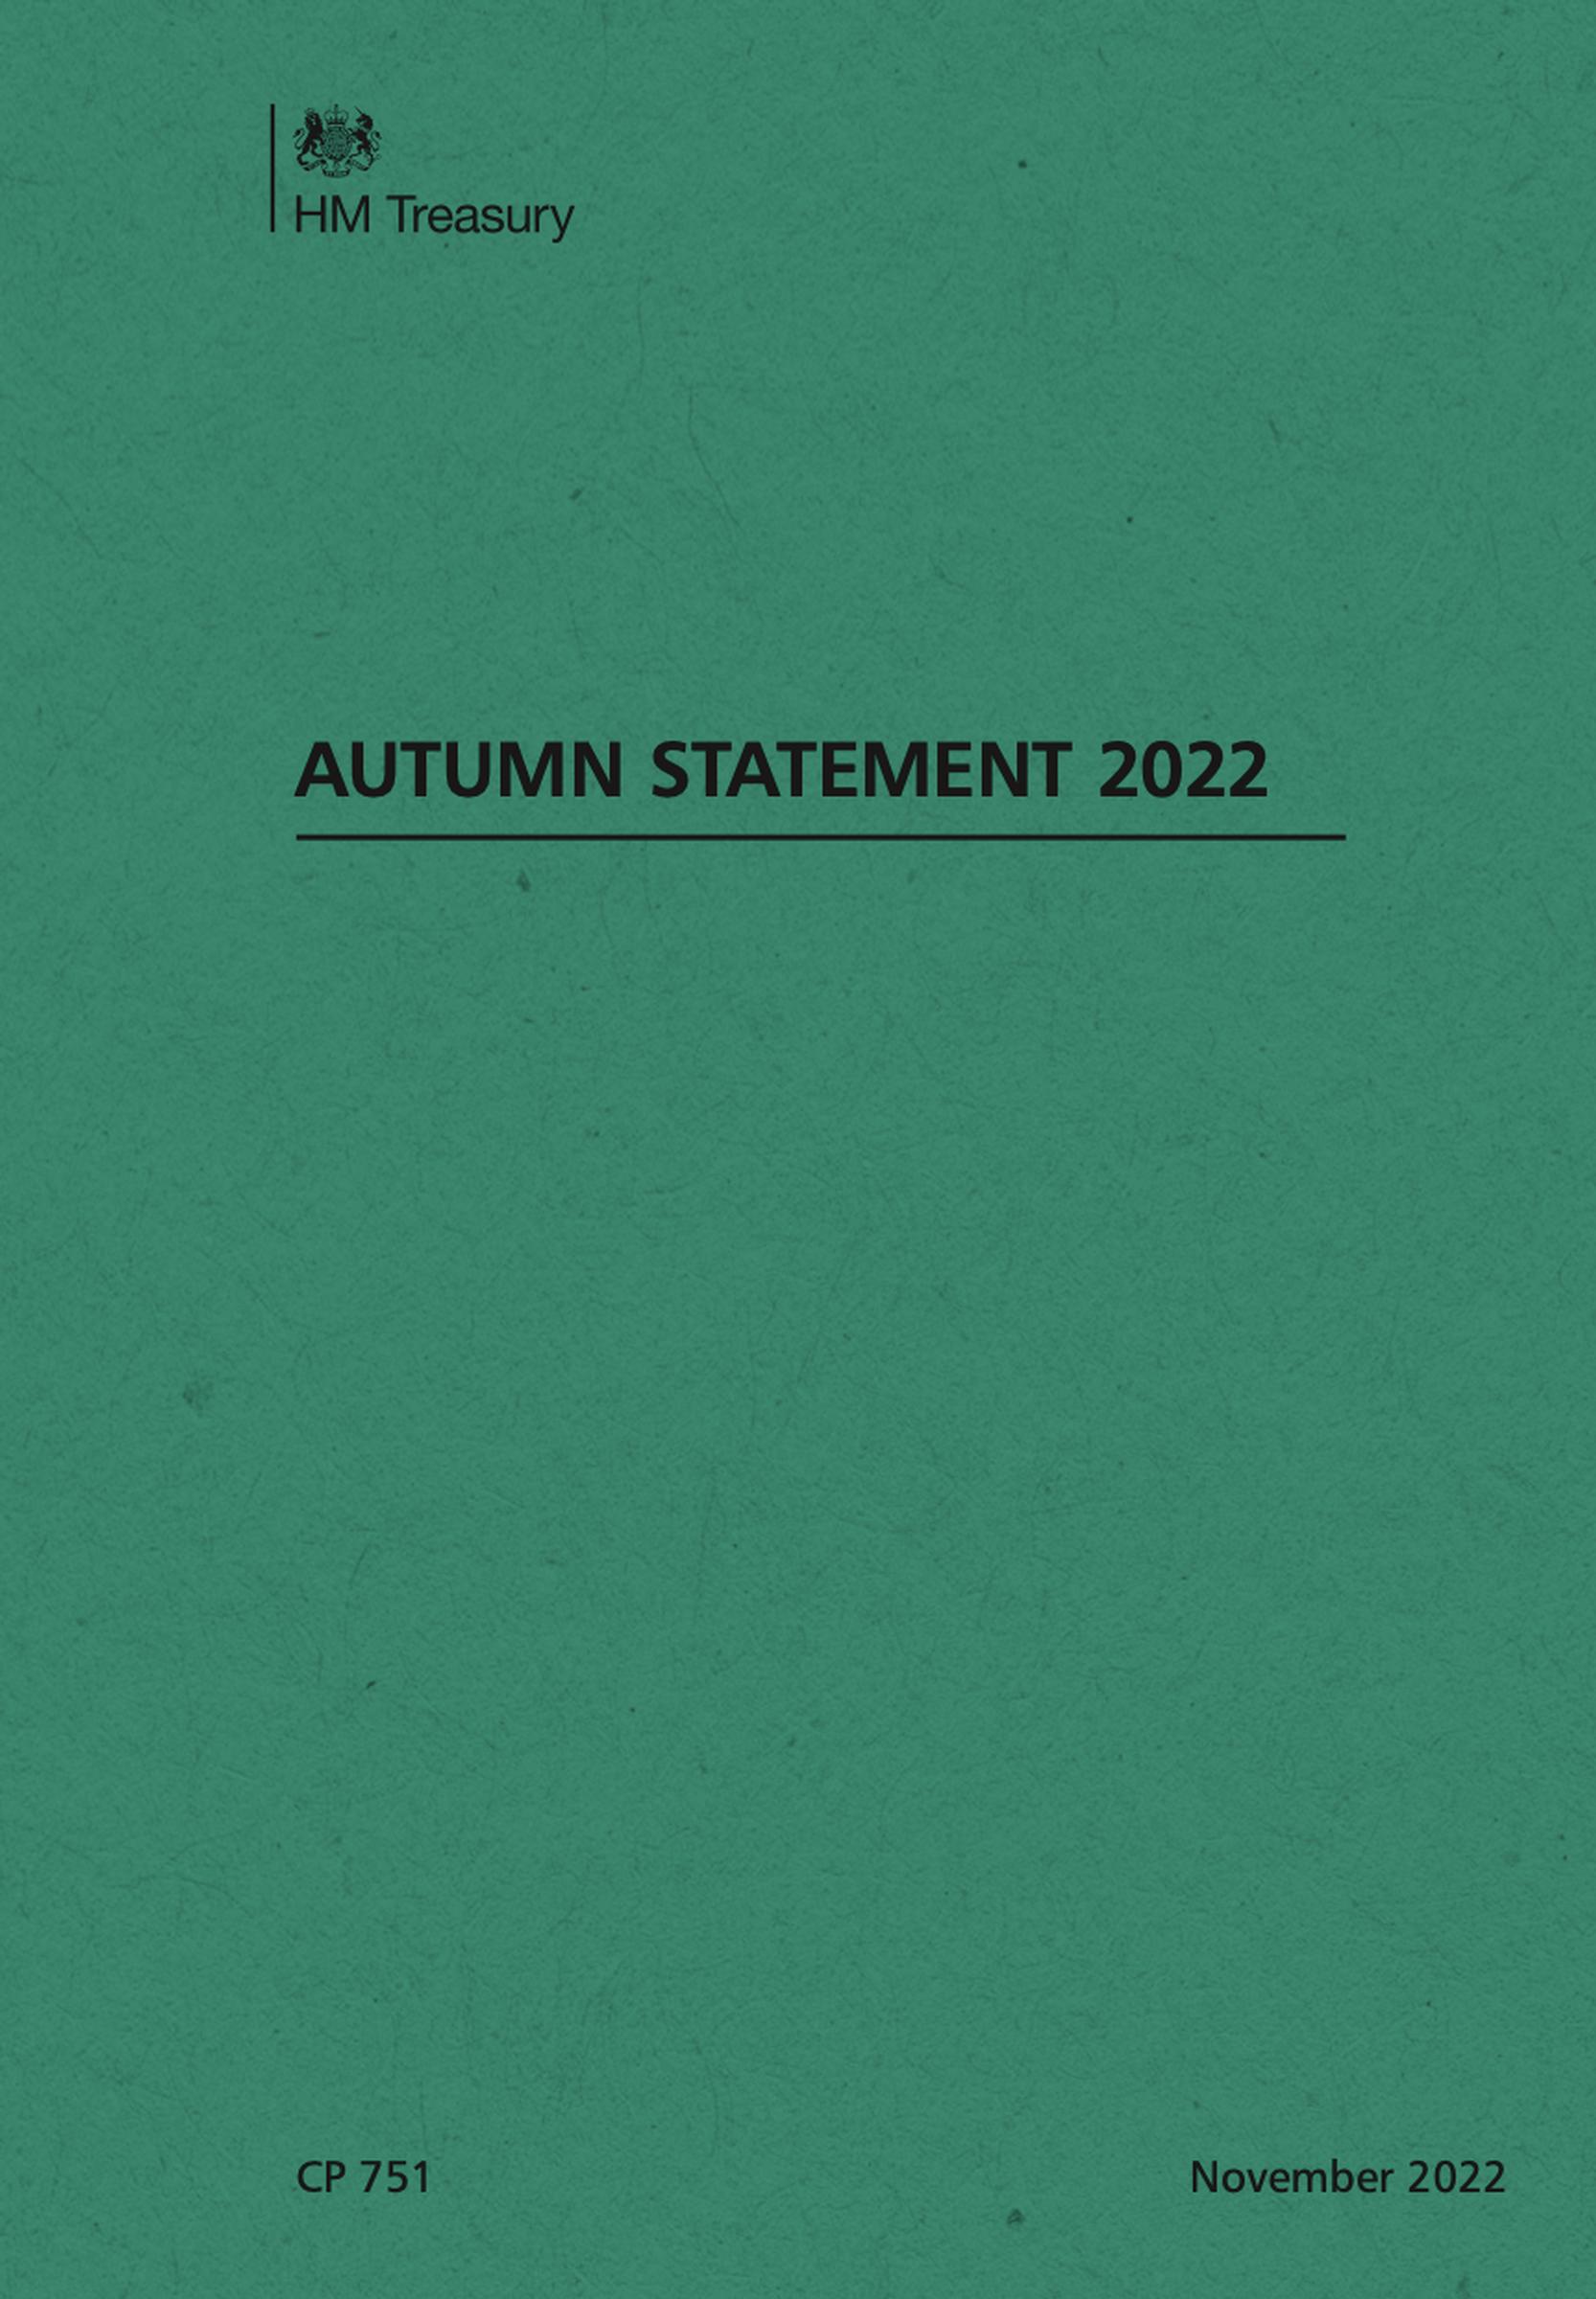 The Autumn Statement